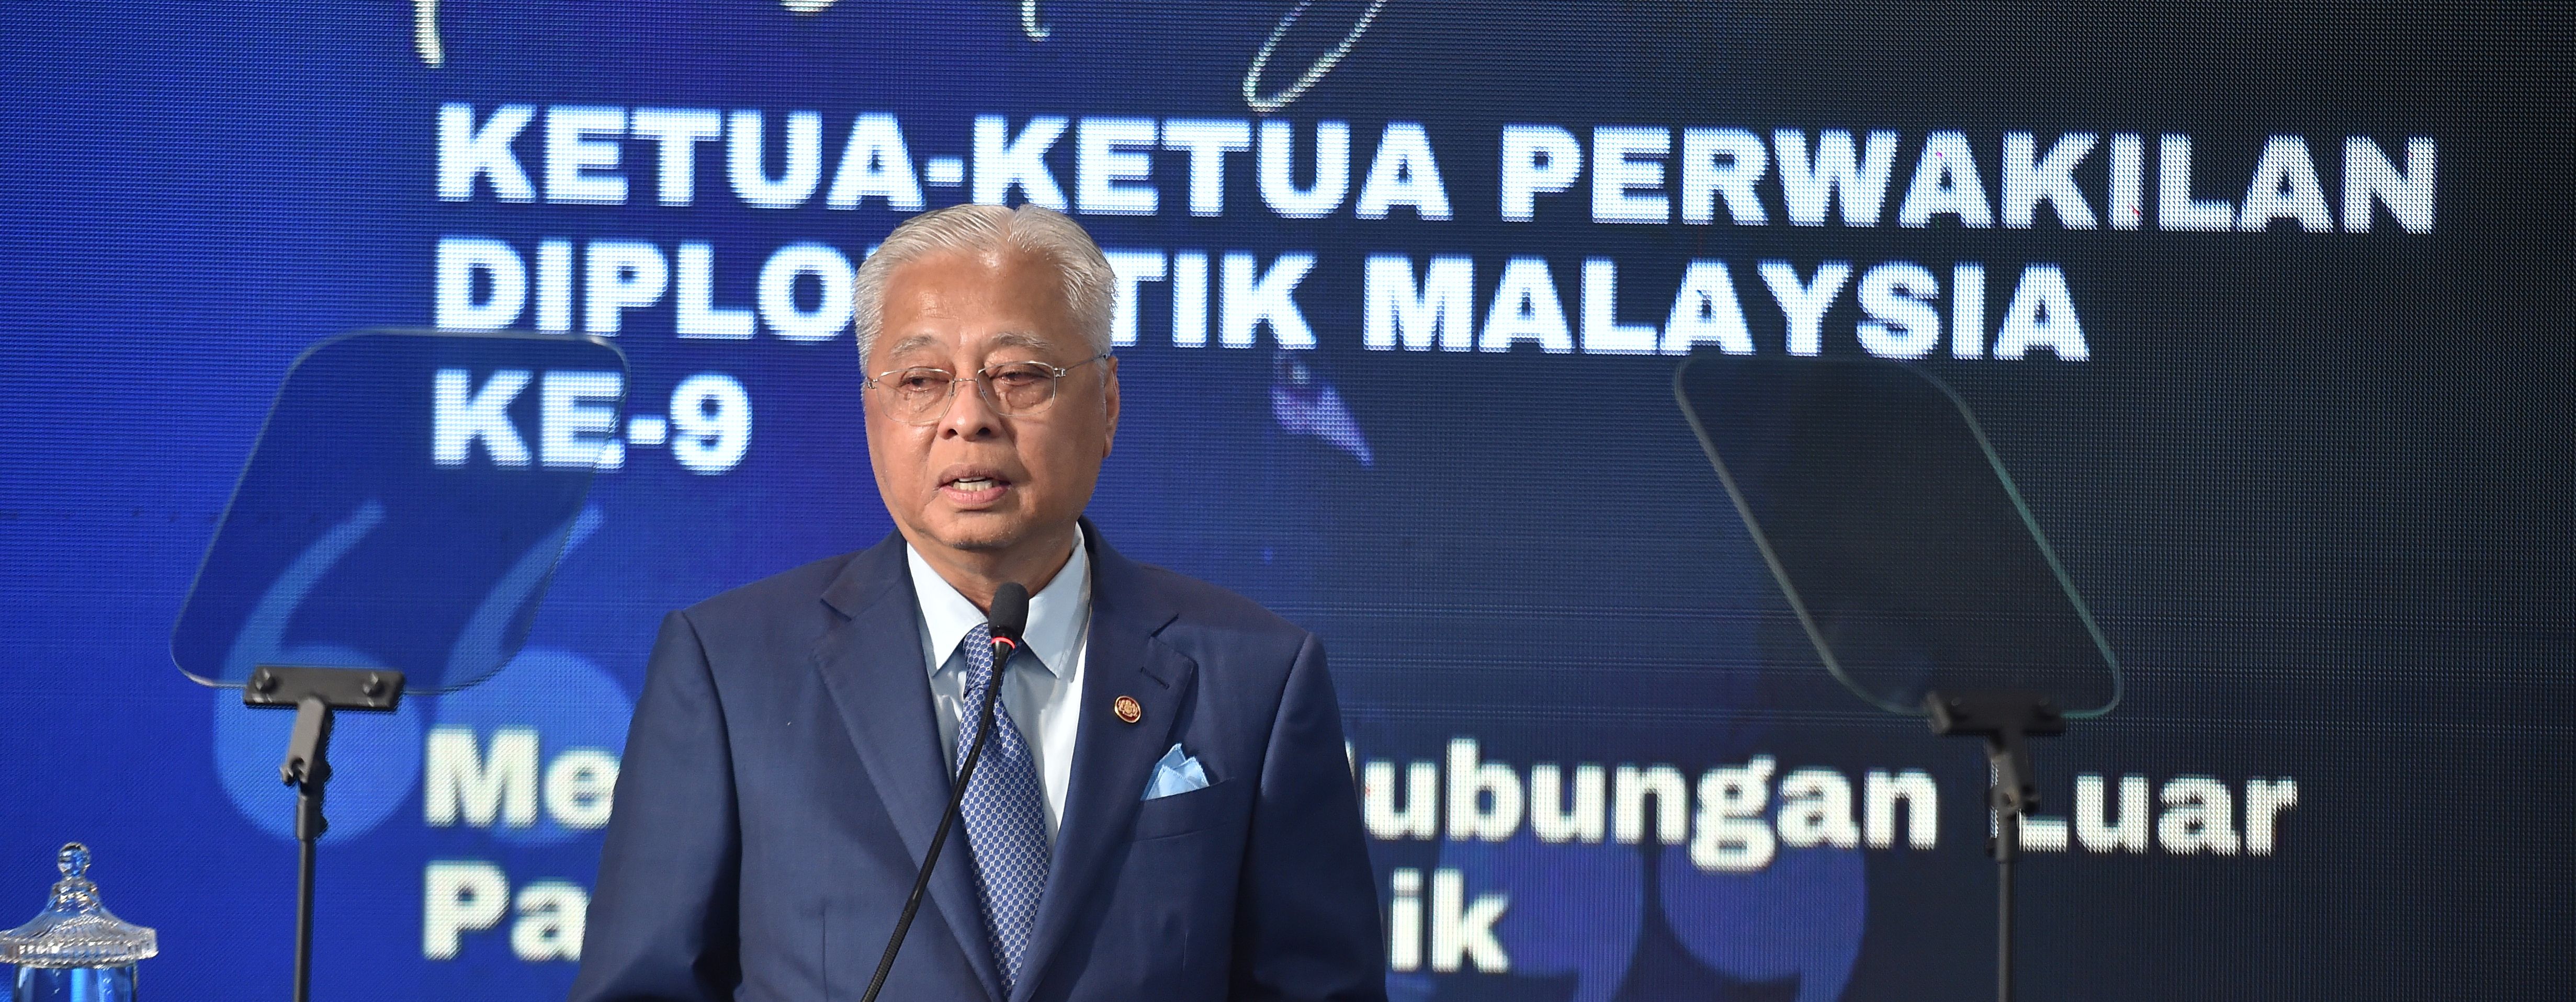 YBM Hadiri Majlis Perasmian Persidangan Ketua-ketua Perwakilan Diplomatik Malaysia Ke-9 (HOMC9)